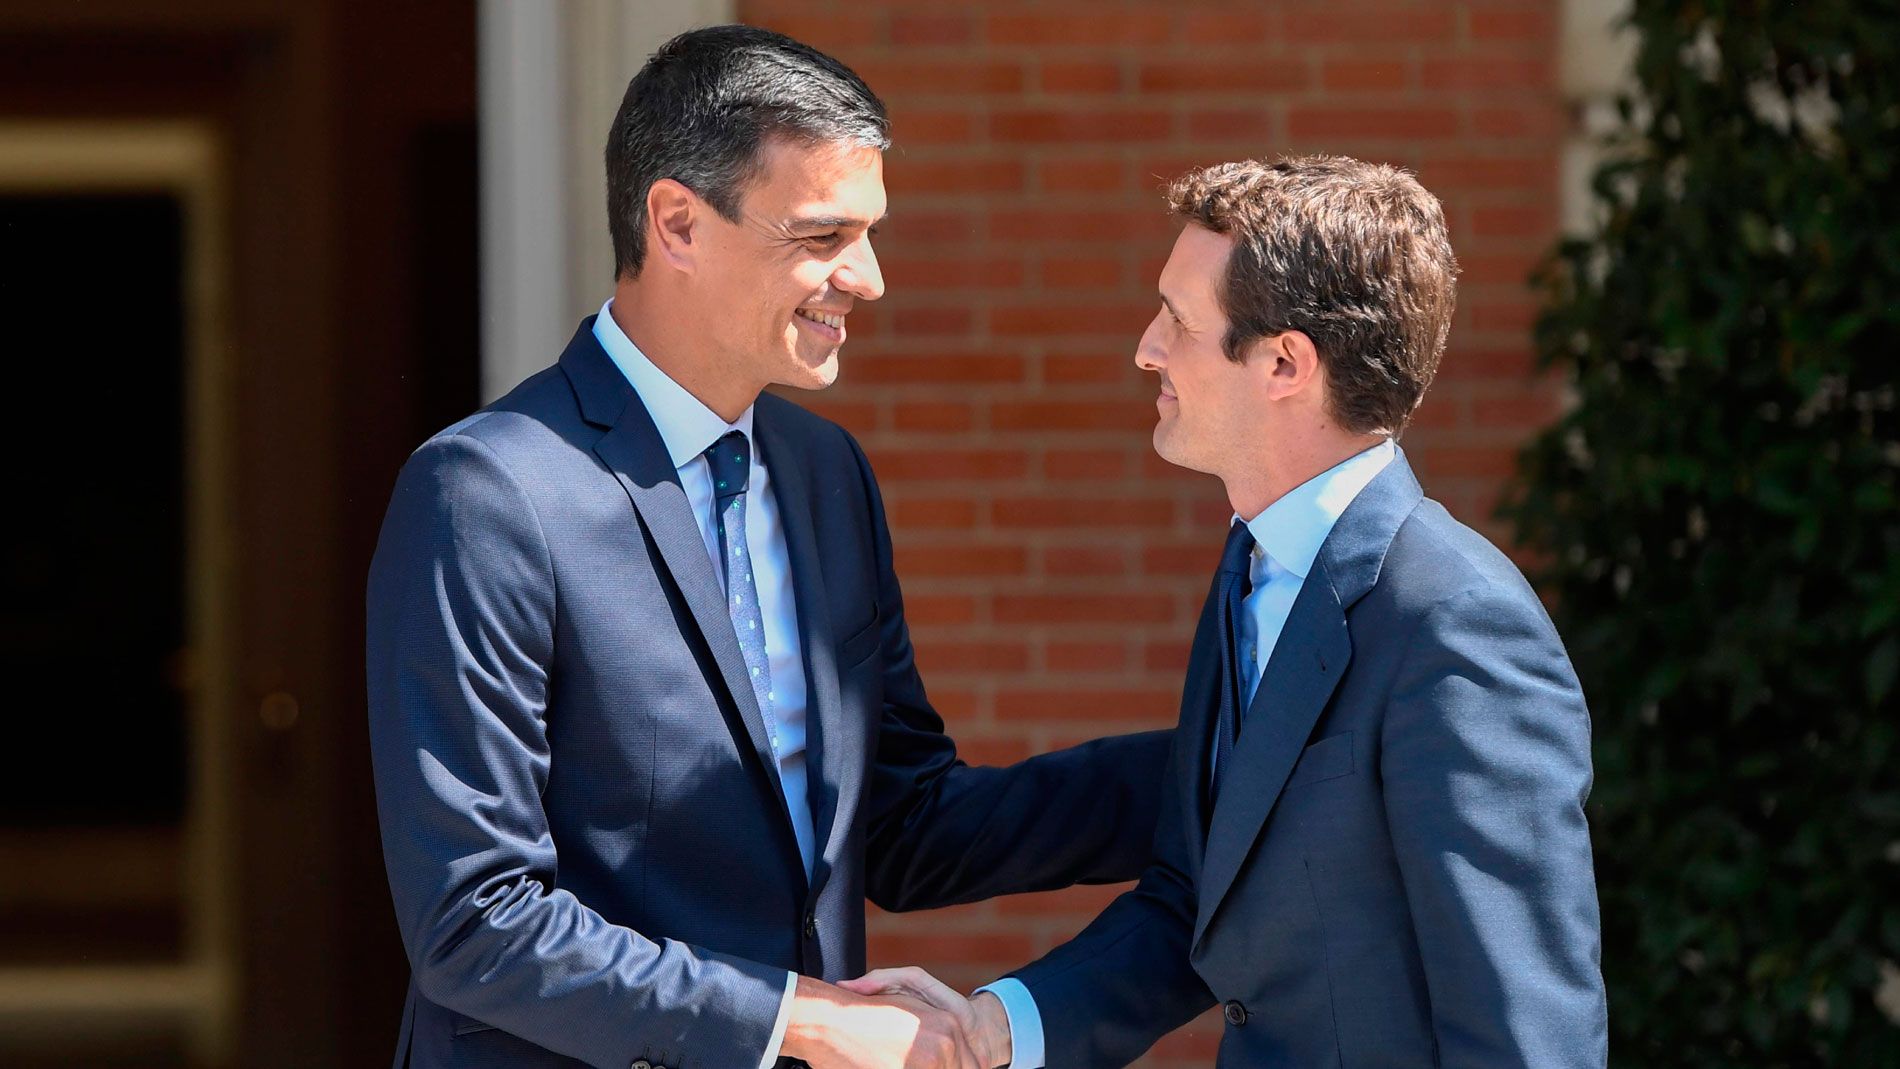 El presidente del Gobierno Pedro Sánchez (Izquierda) recibe al presidente del PP Pablo Casado (derecha) en una imagen de archivo